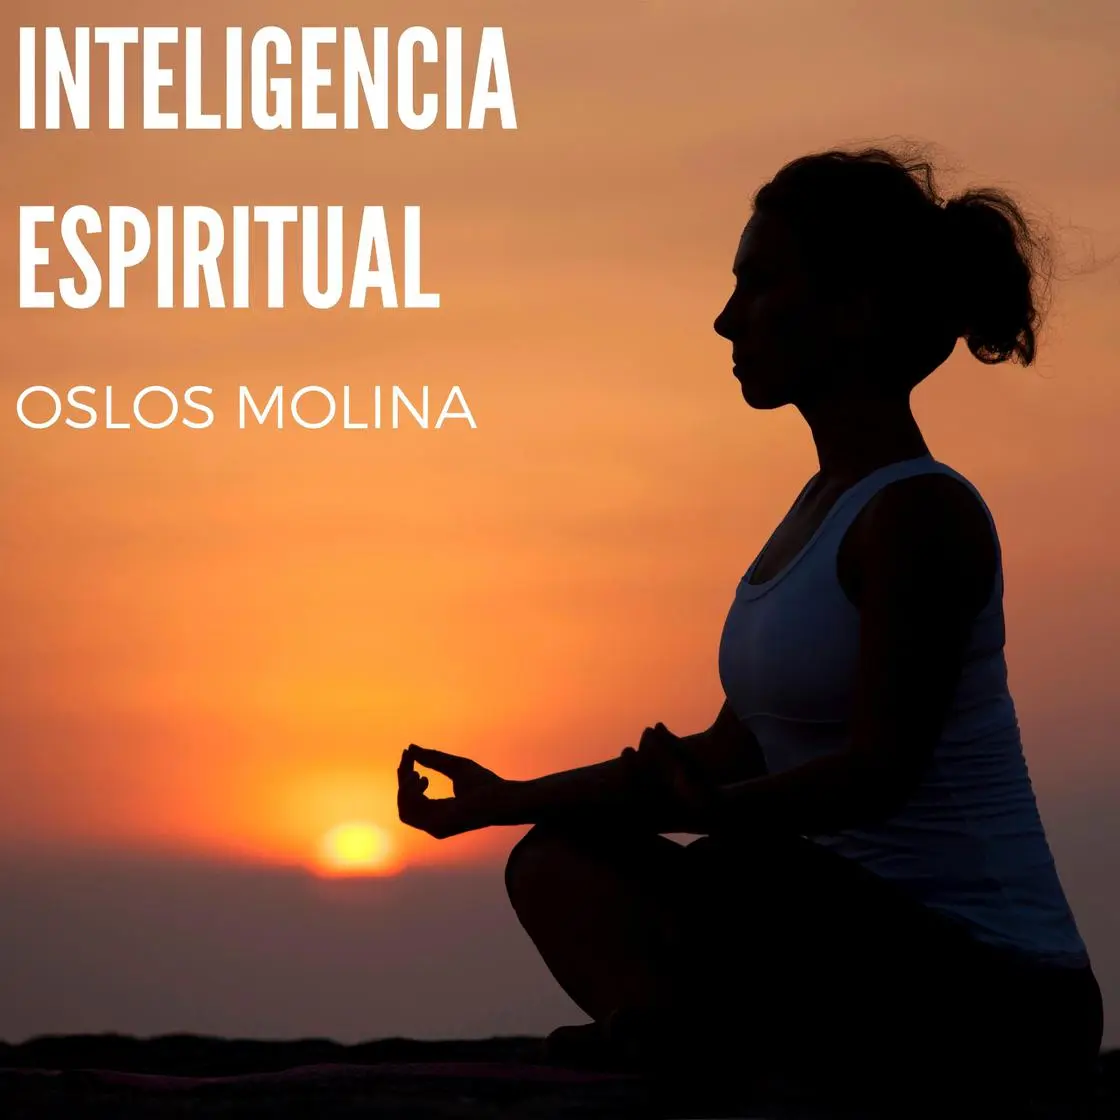 inteligencia espiritual - Cómo se obtiene la inteligencia espiritual